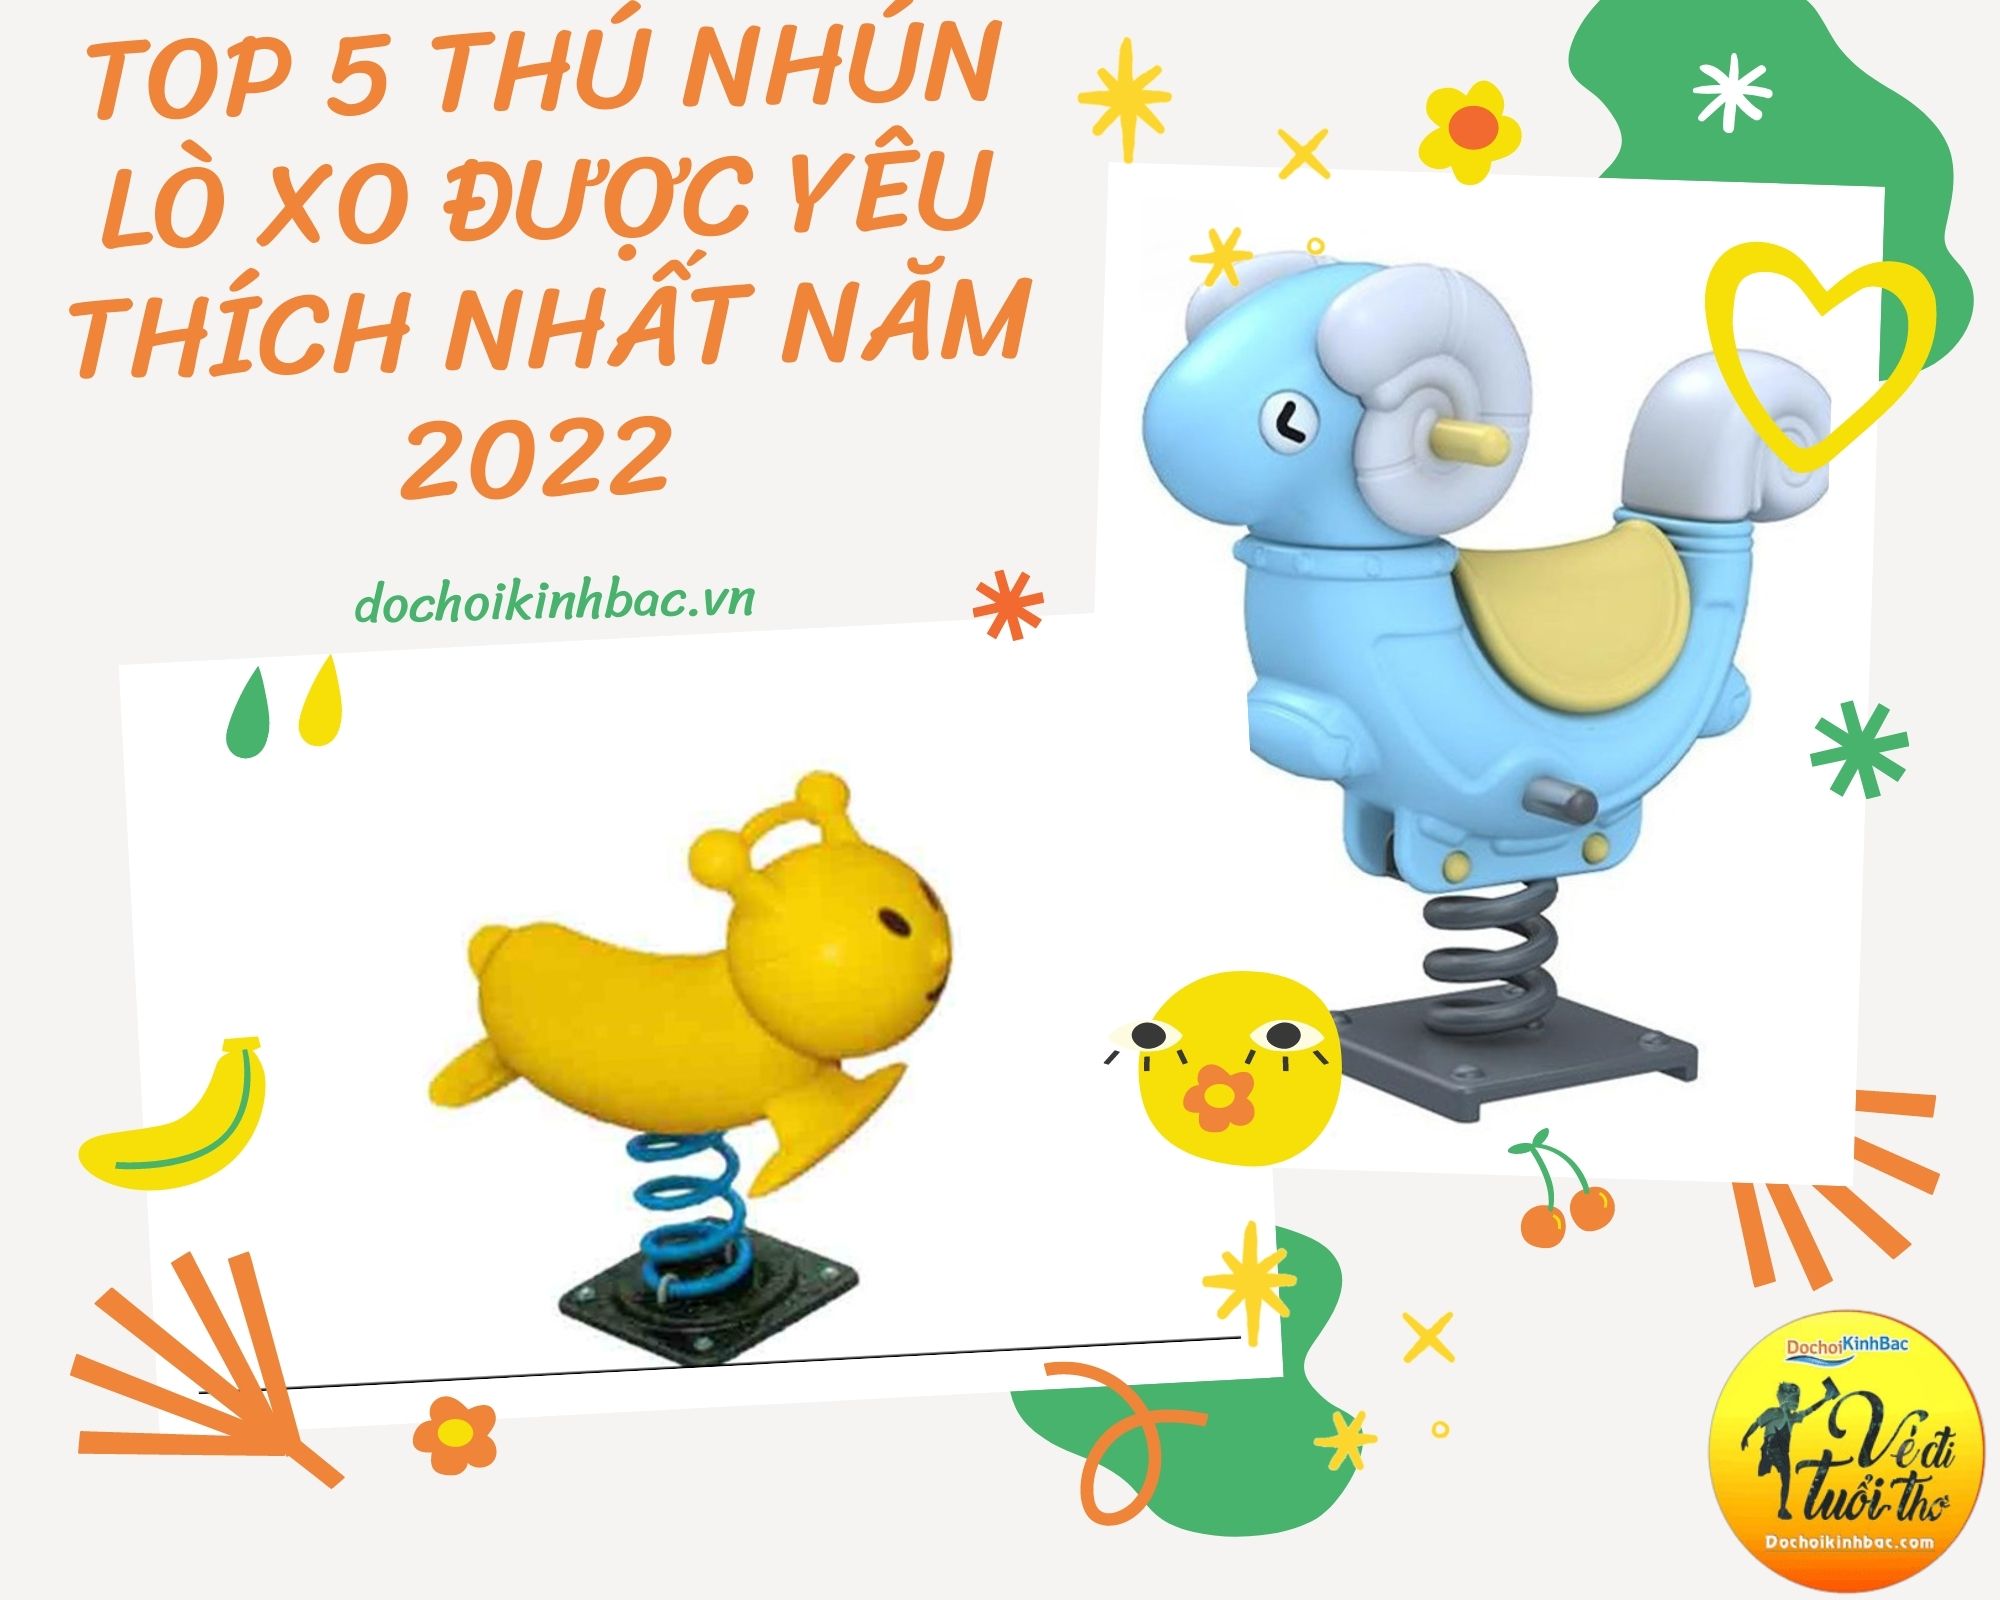 Top 5 Thú nhún lò xo được yêu thích nhất năm 2022 tại Ngải Thầu, Bát Xát, Lào Cai